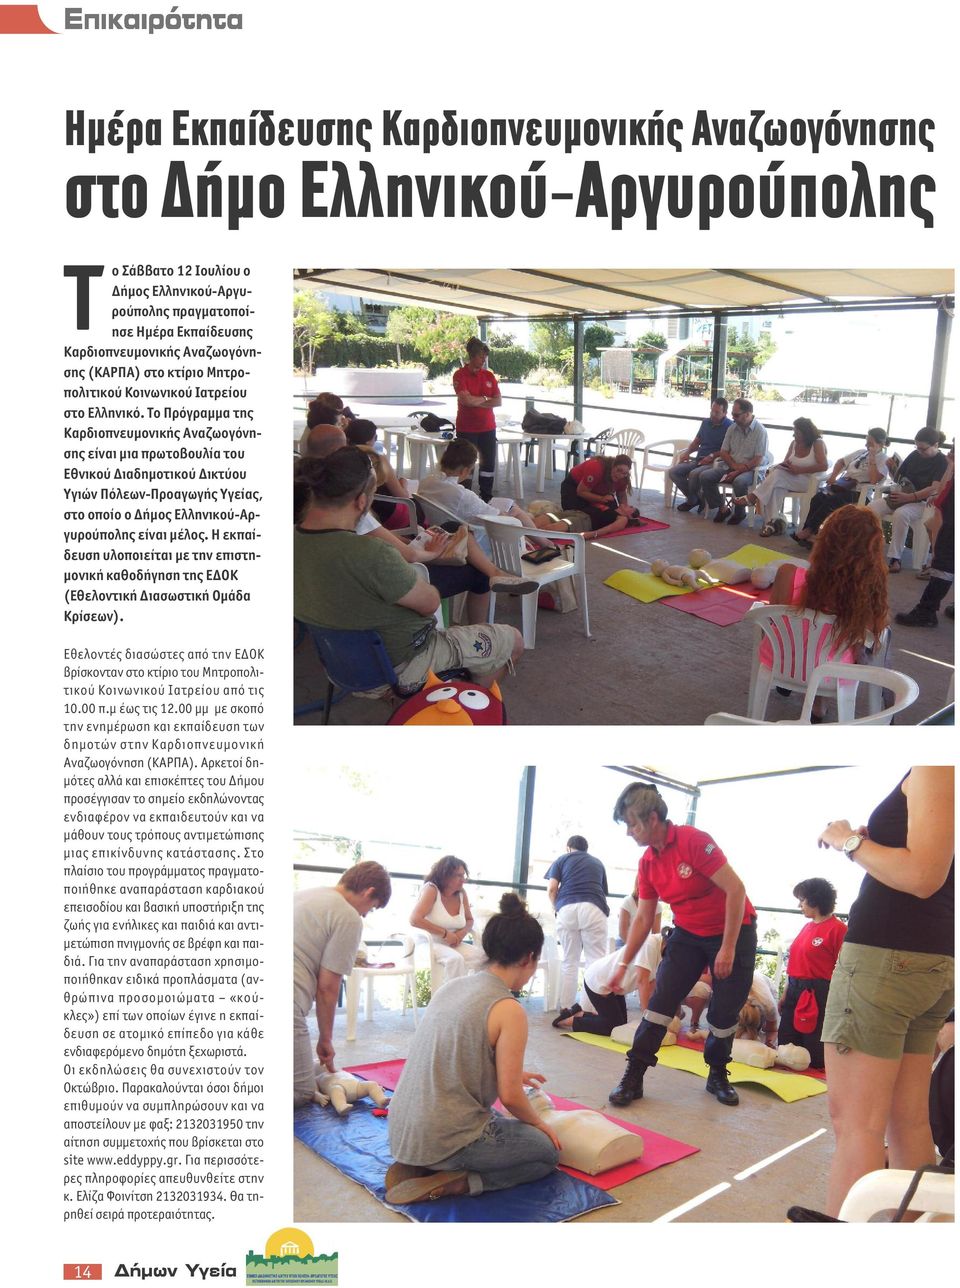 Το Πρόγραμμα της Καρδιοπνευμονικής Αναζωογόνησης είναι μια πρωτοβουλία του Εθνικού Διαδημοτικού Δικτύου Υγιών Πόλεων-Προαγωγής Υγείας, στο οποίο ο Δήμος Ελληνικού-Αργυρούπολης είναι μέλος.